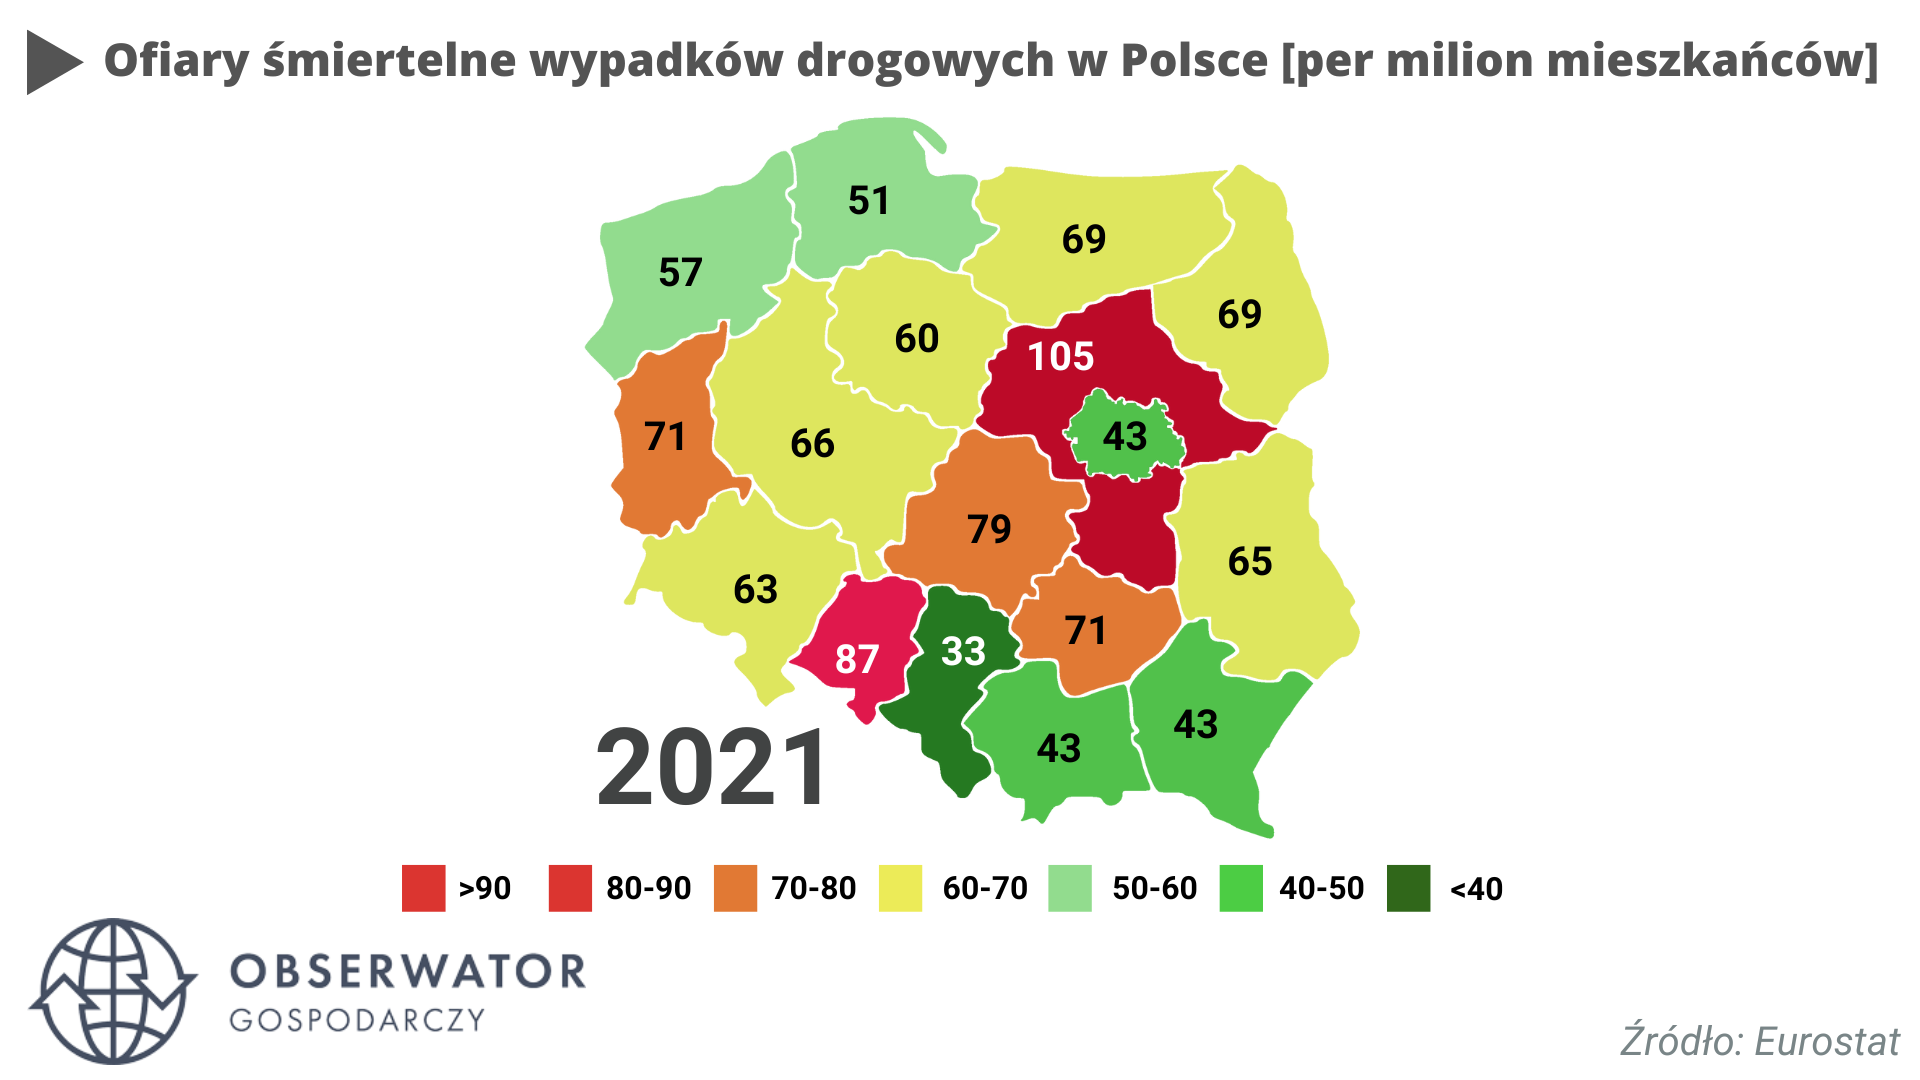 Decese în accidente rutiere în Polonia [per milion mieszkańców]